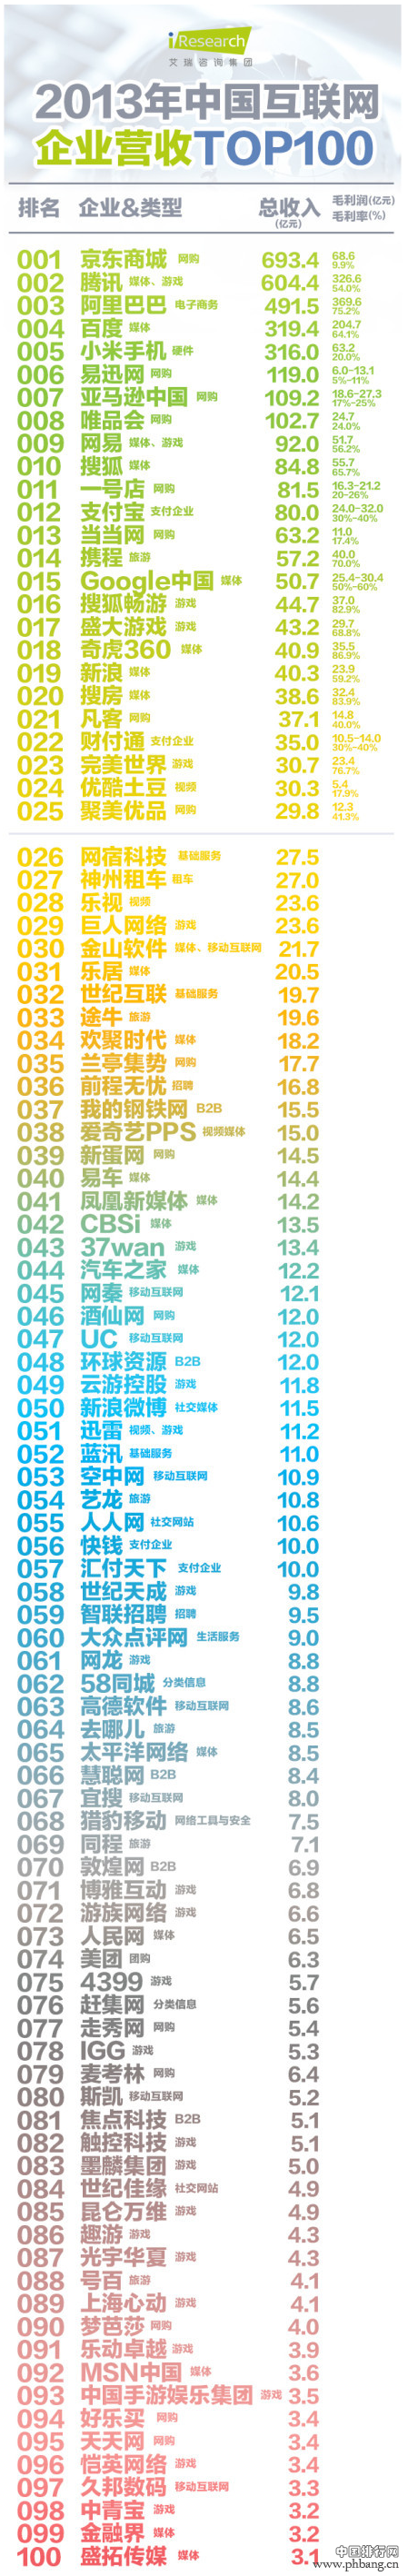 2013中国互联网企业营收TOP100榜单